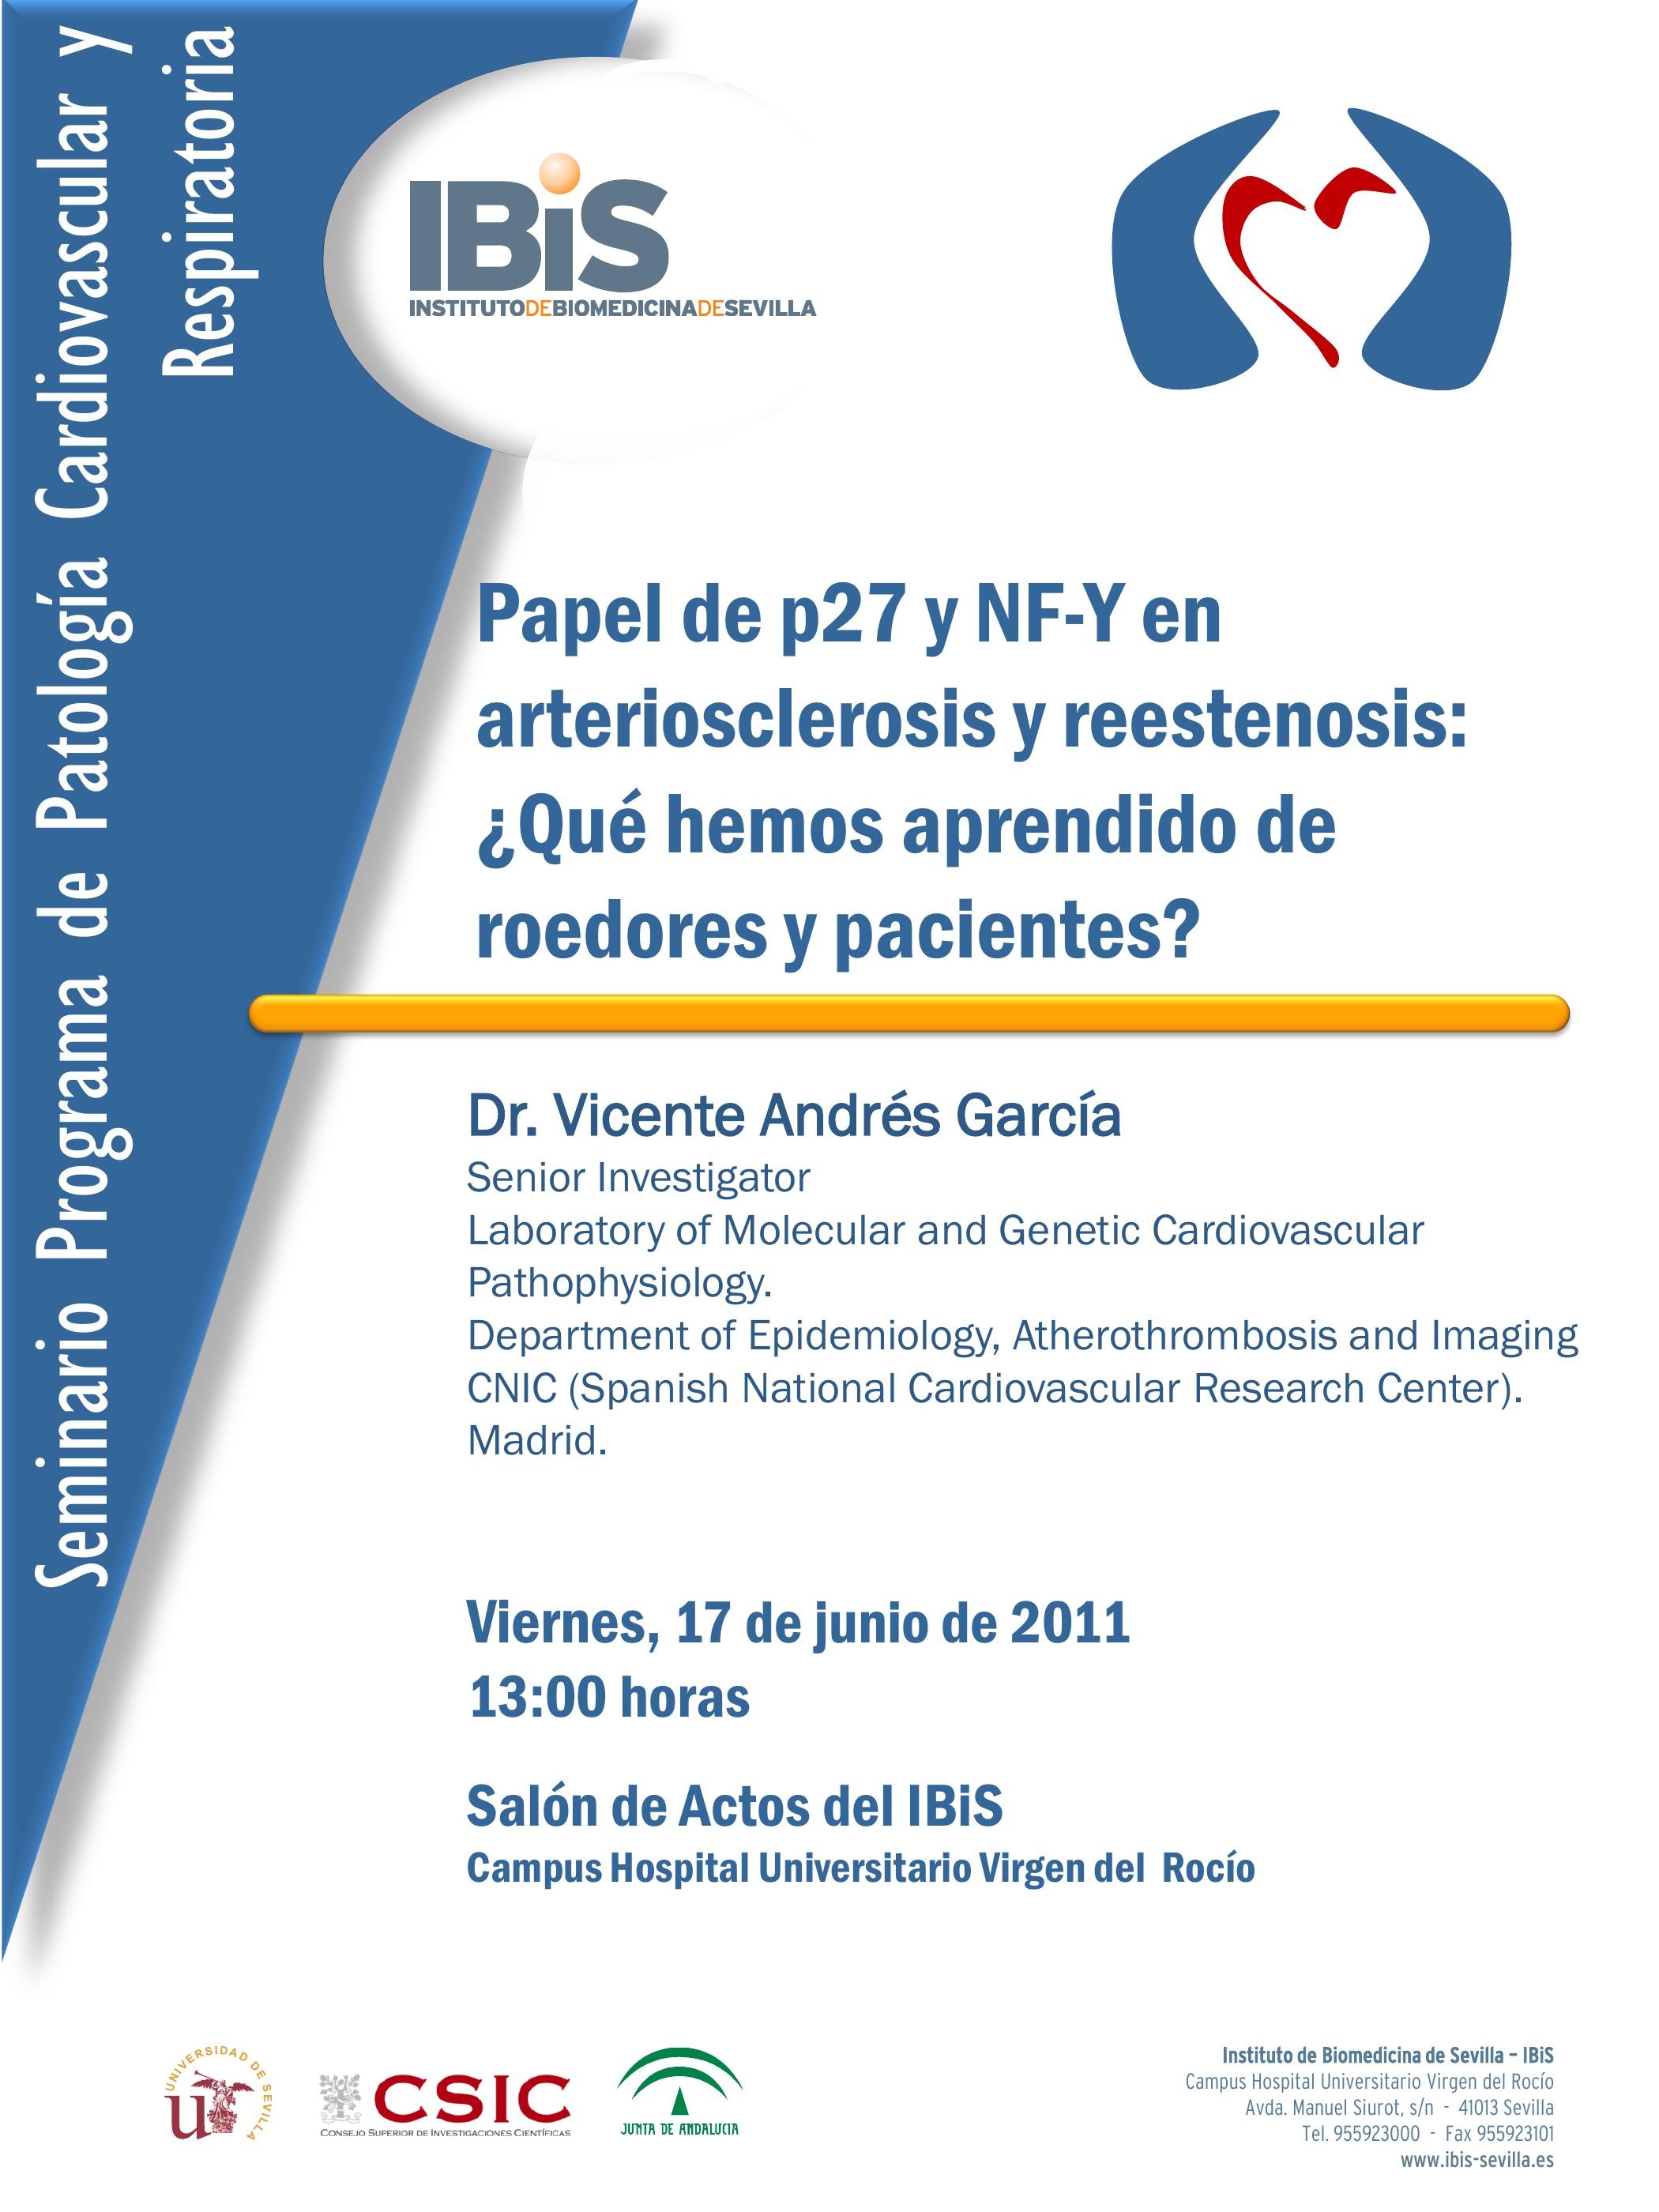 Poster: Papel de p27 y NF-Y en arteriosclerosis y reestenosis: ¿Qué hemos aprendido de roedores y pacientes?